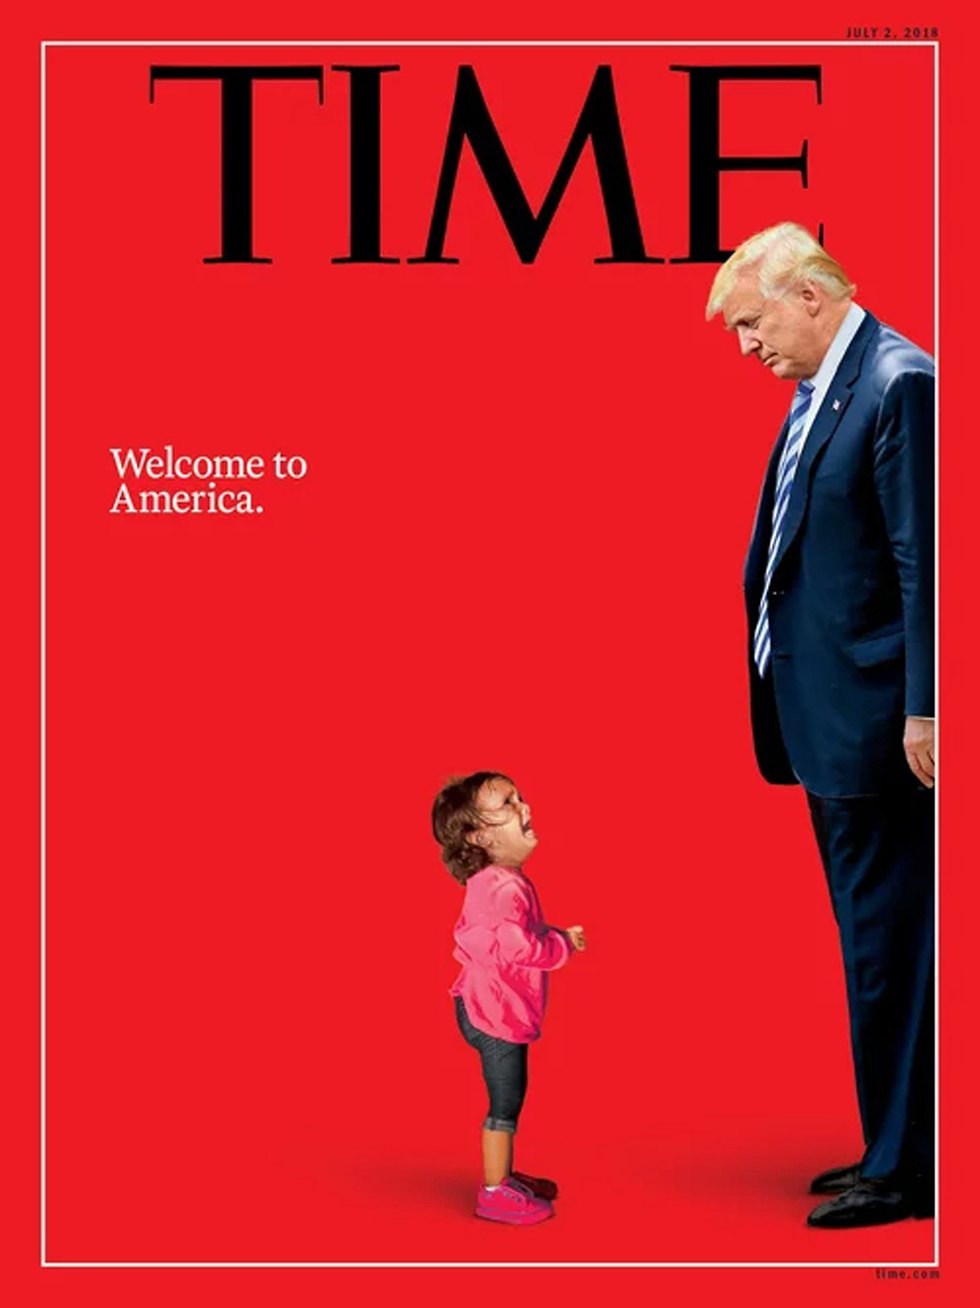 מגזין טיים ילדה בת ה מהגרים מול נשיא ארה